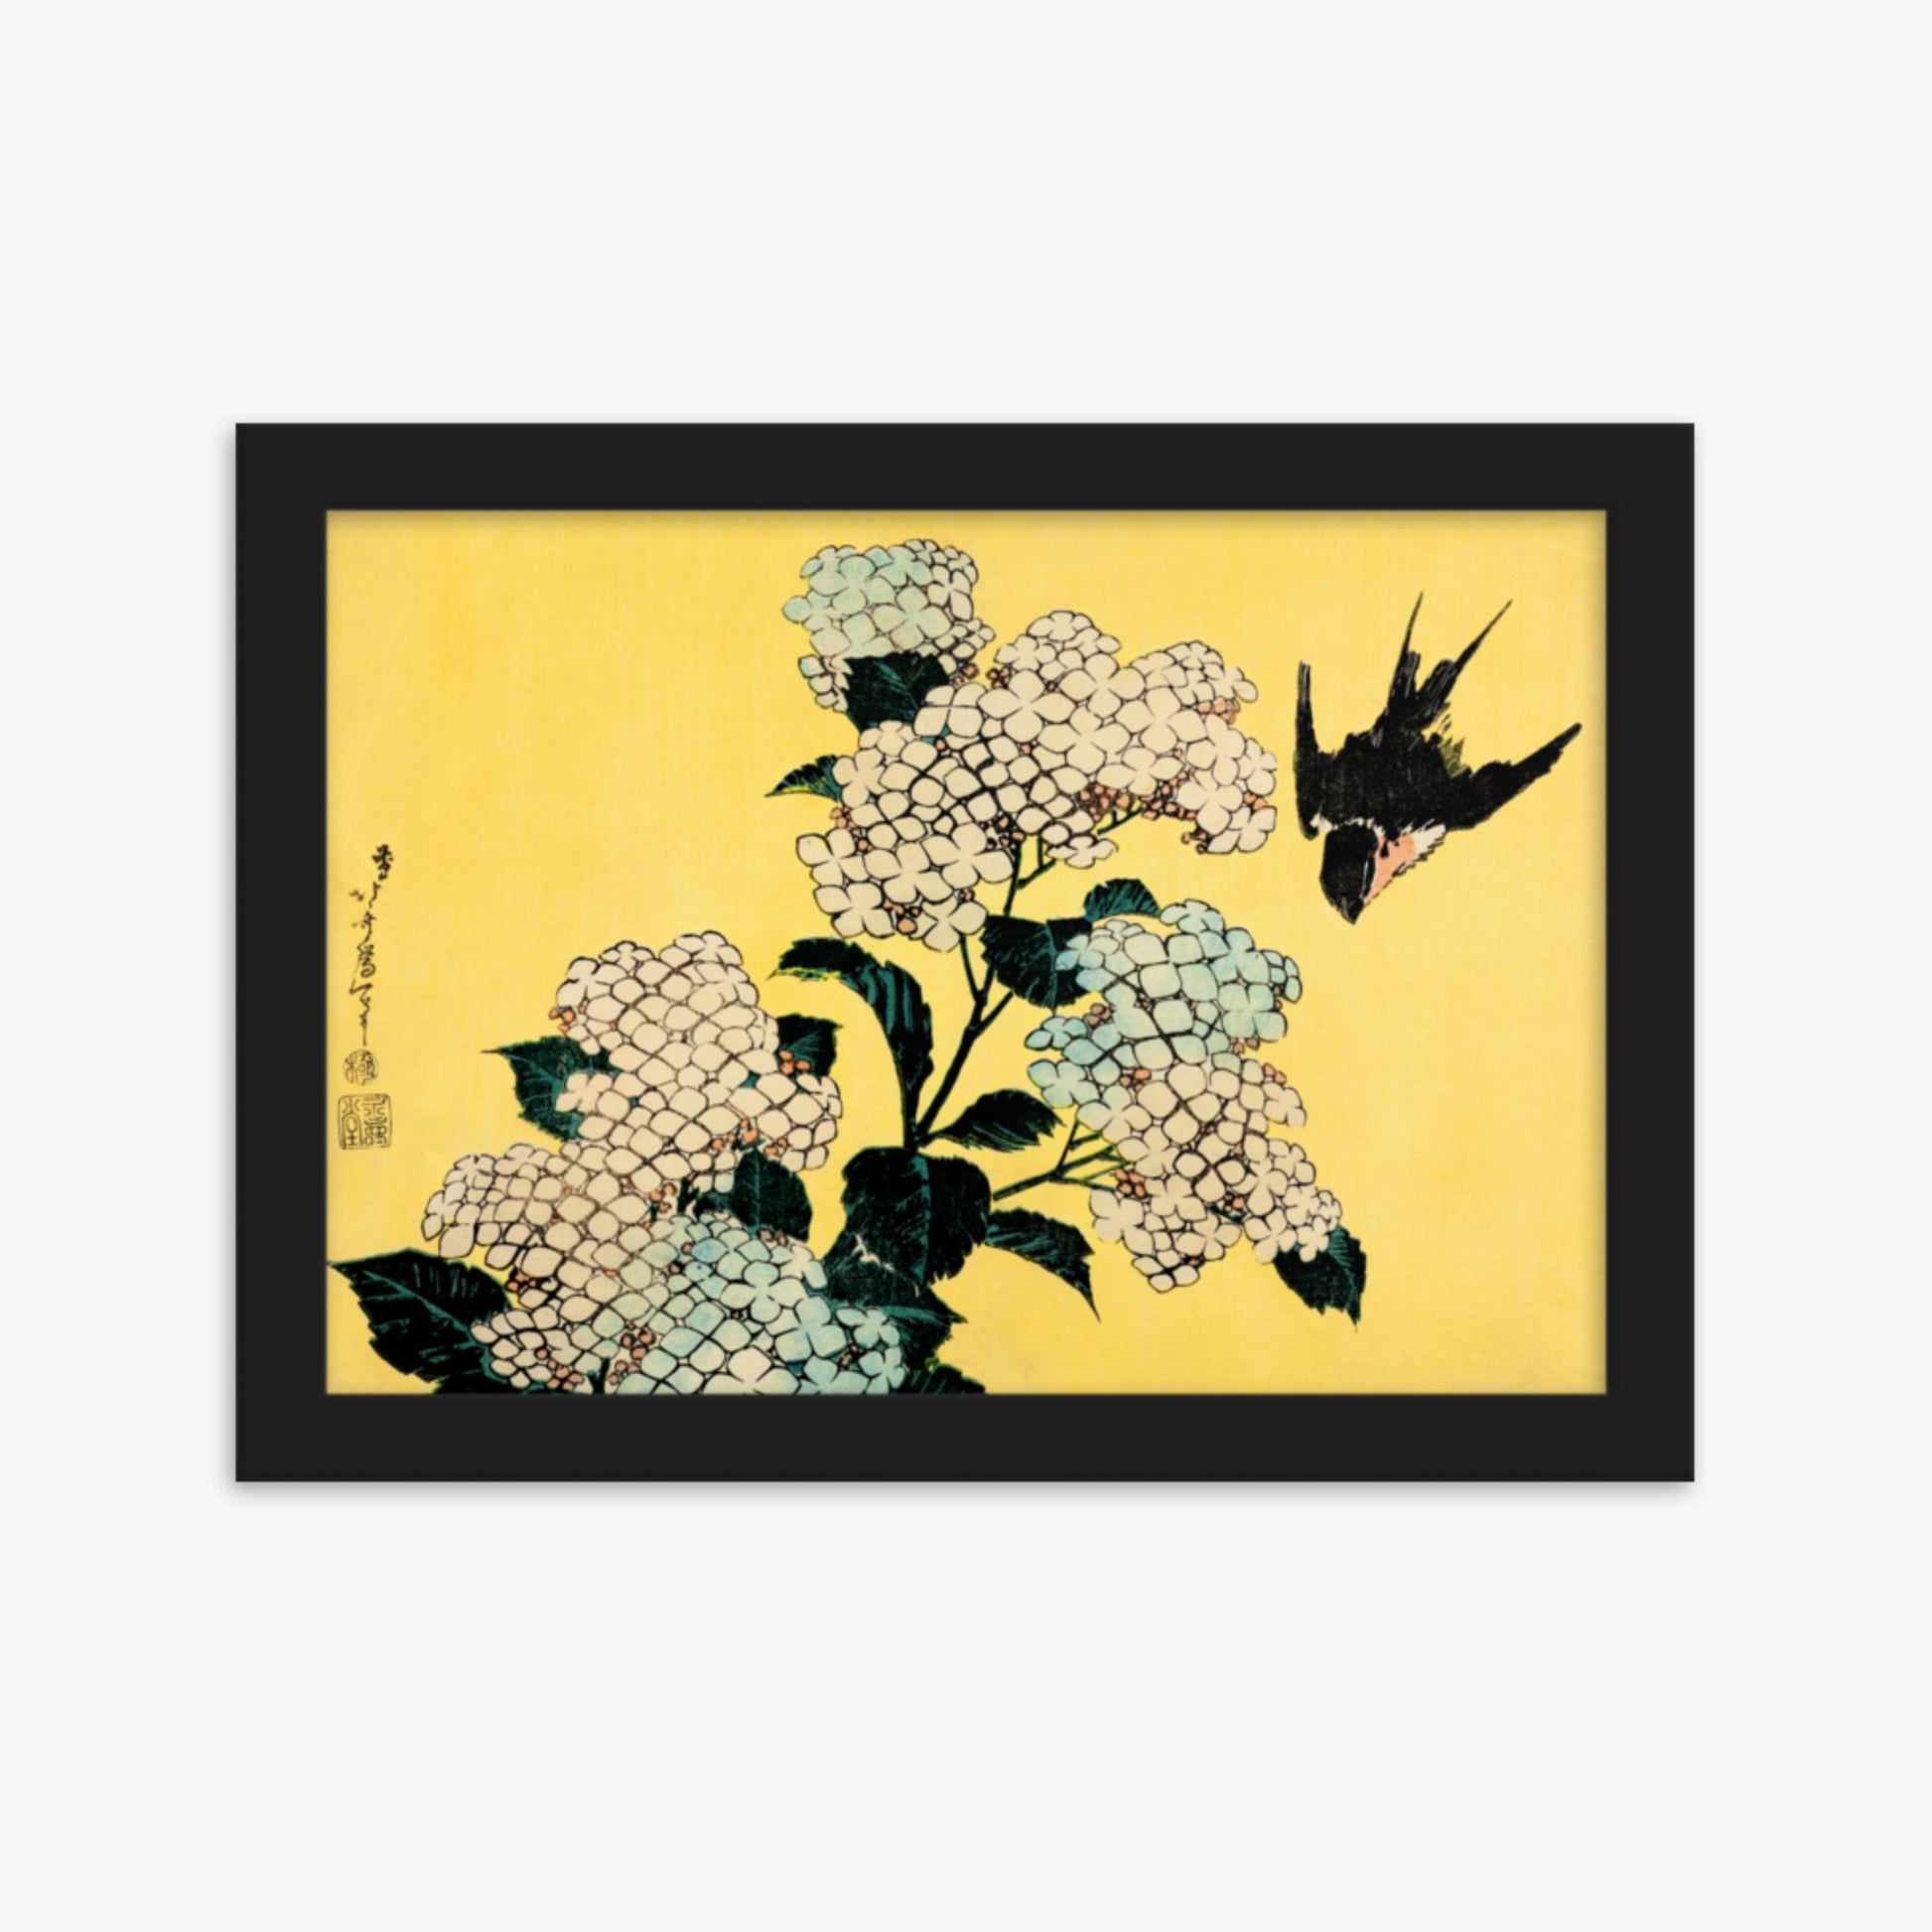 Katsushika Hokusai - Hydrangea and Swallow 21x30 cm Poster With Black Frame